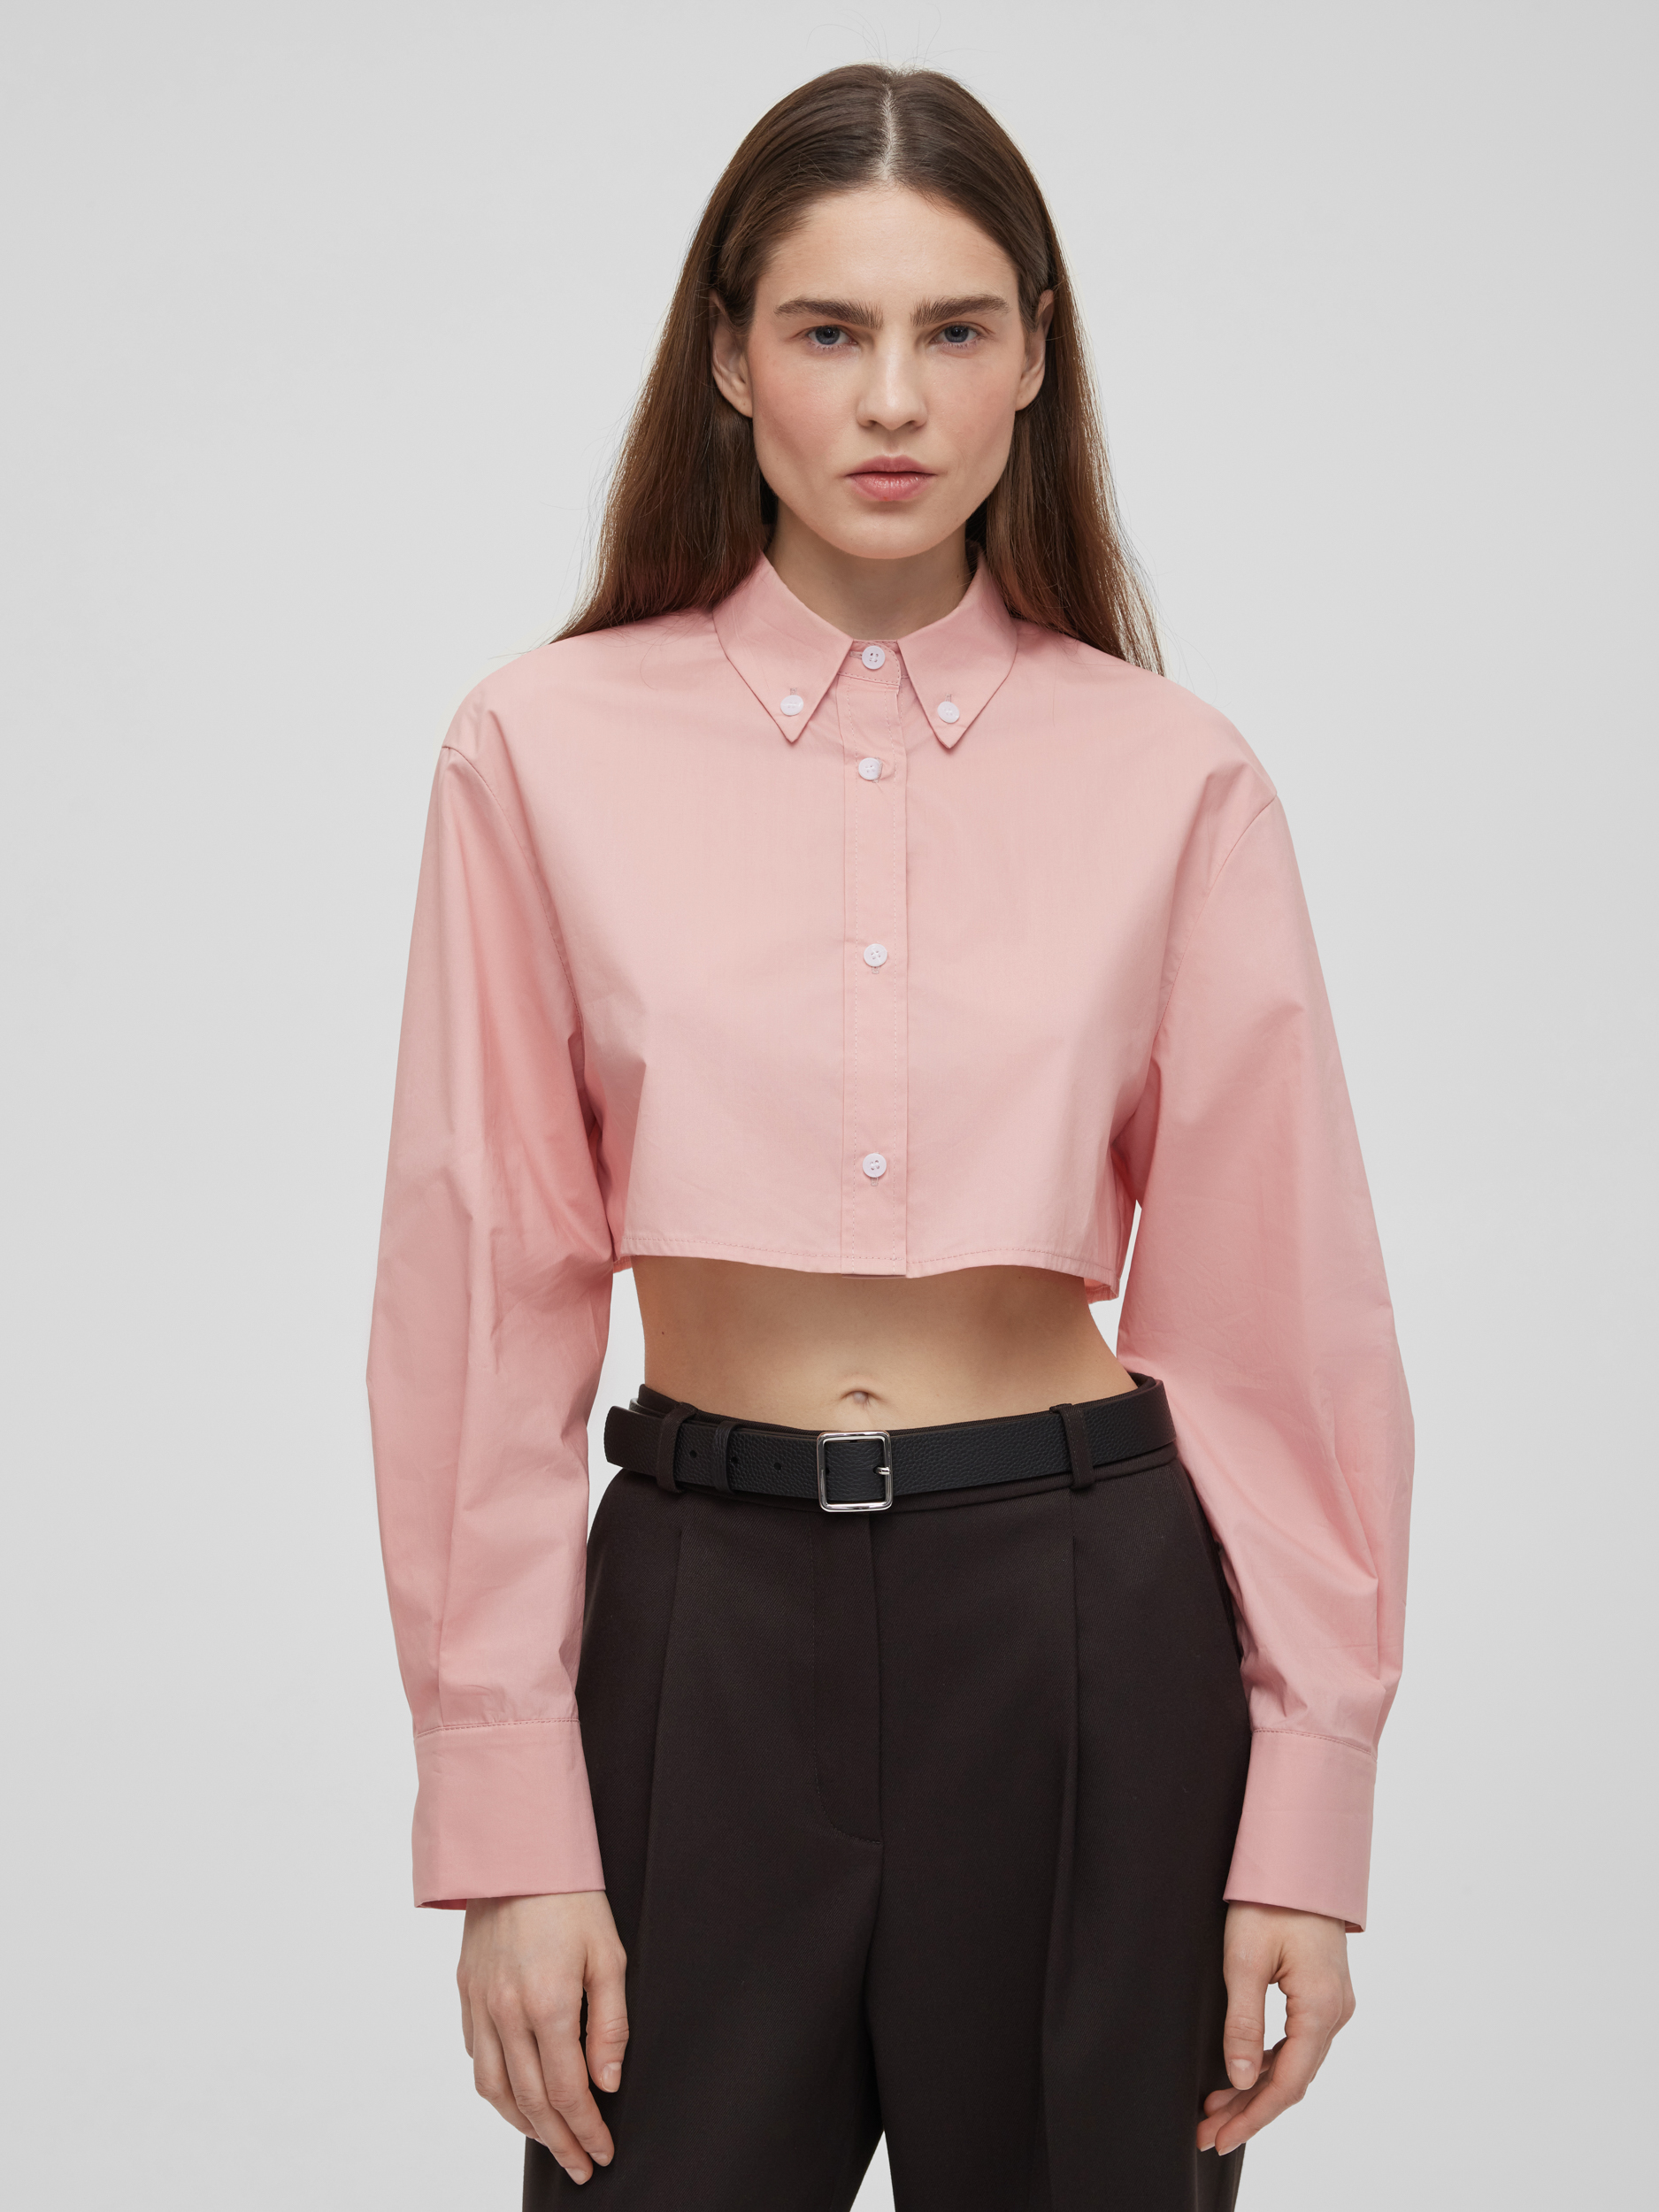 Рубашка женская короткая из хлопка, цвет – розовый рубашка женская короткая из хлопка цвет – розовый